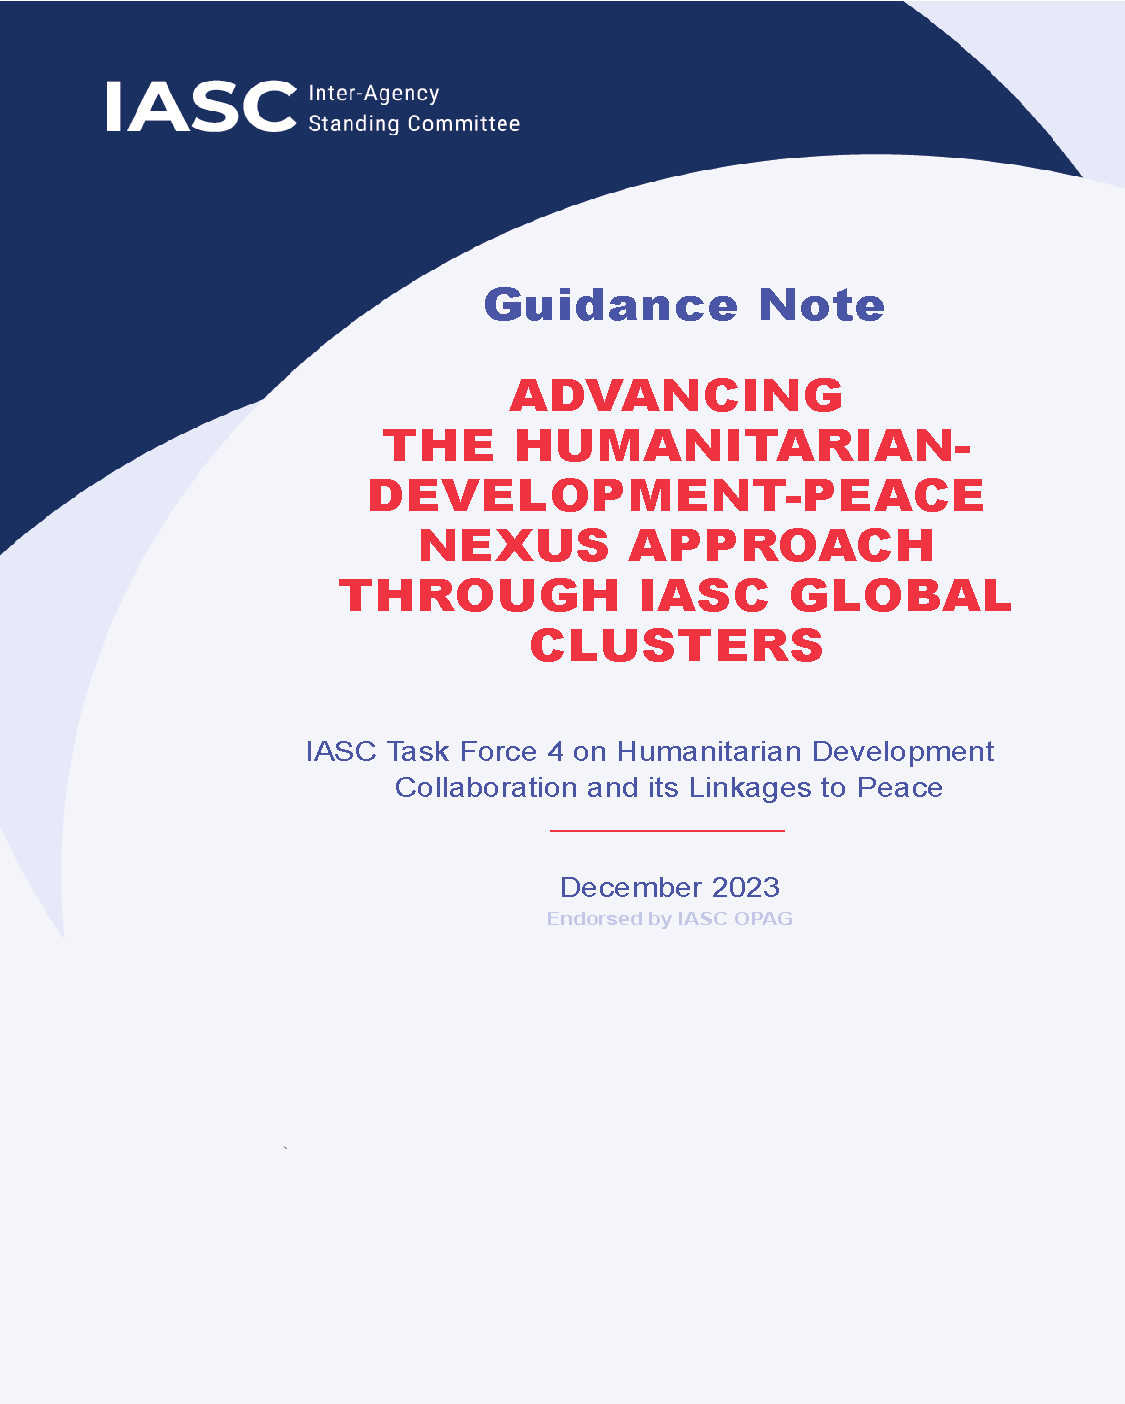 Page de couverture pour Faire progresser l'approche Nexus Humanitaire-Développement-Paix à travers les clusters mondiaux de l'IASC